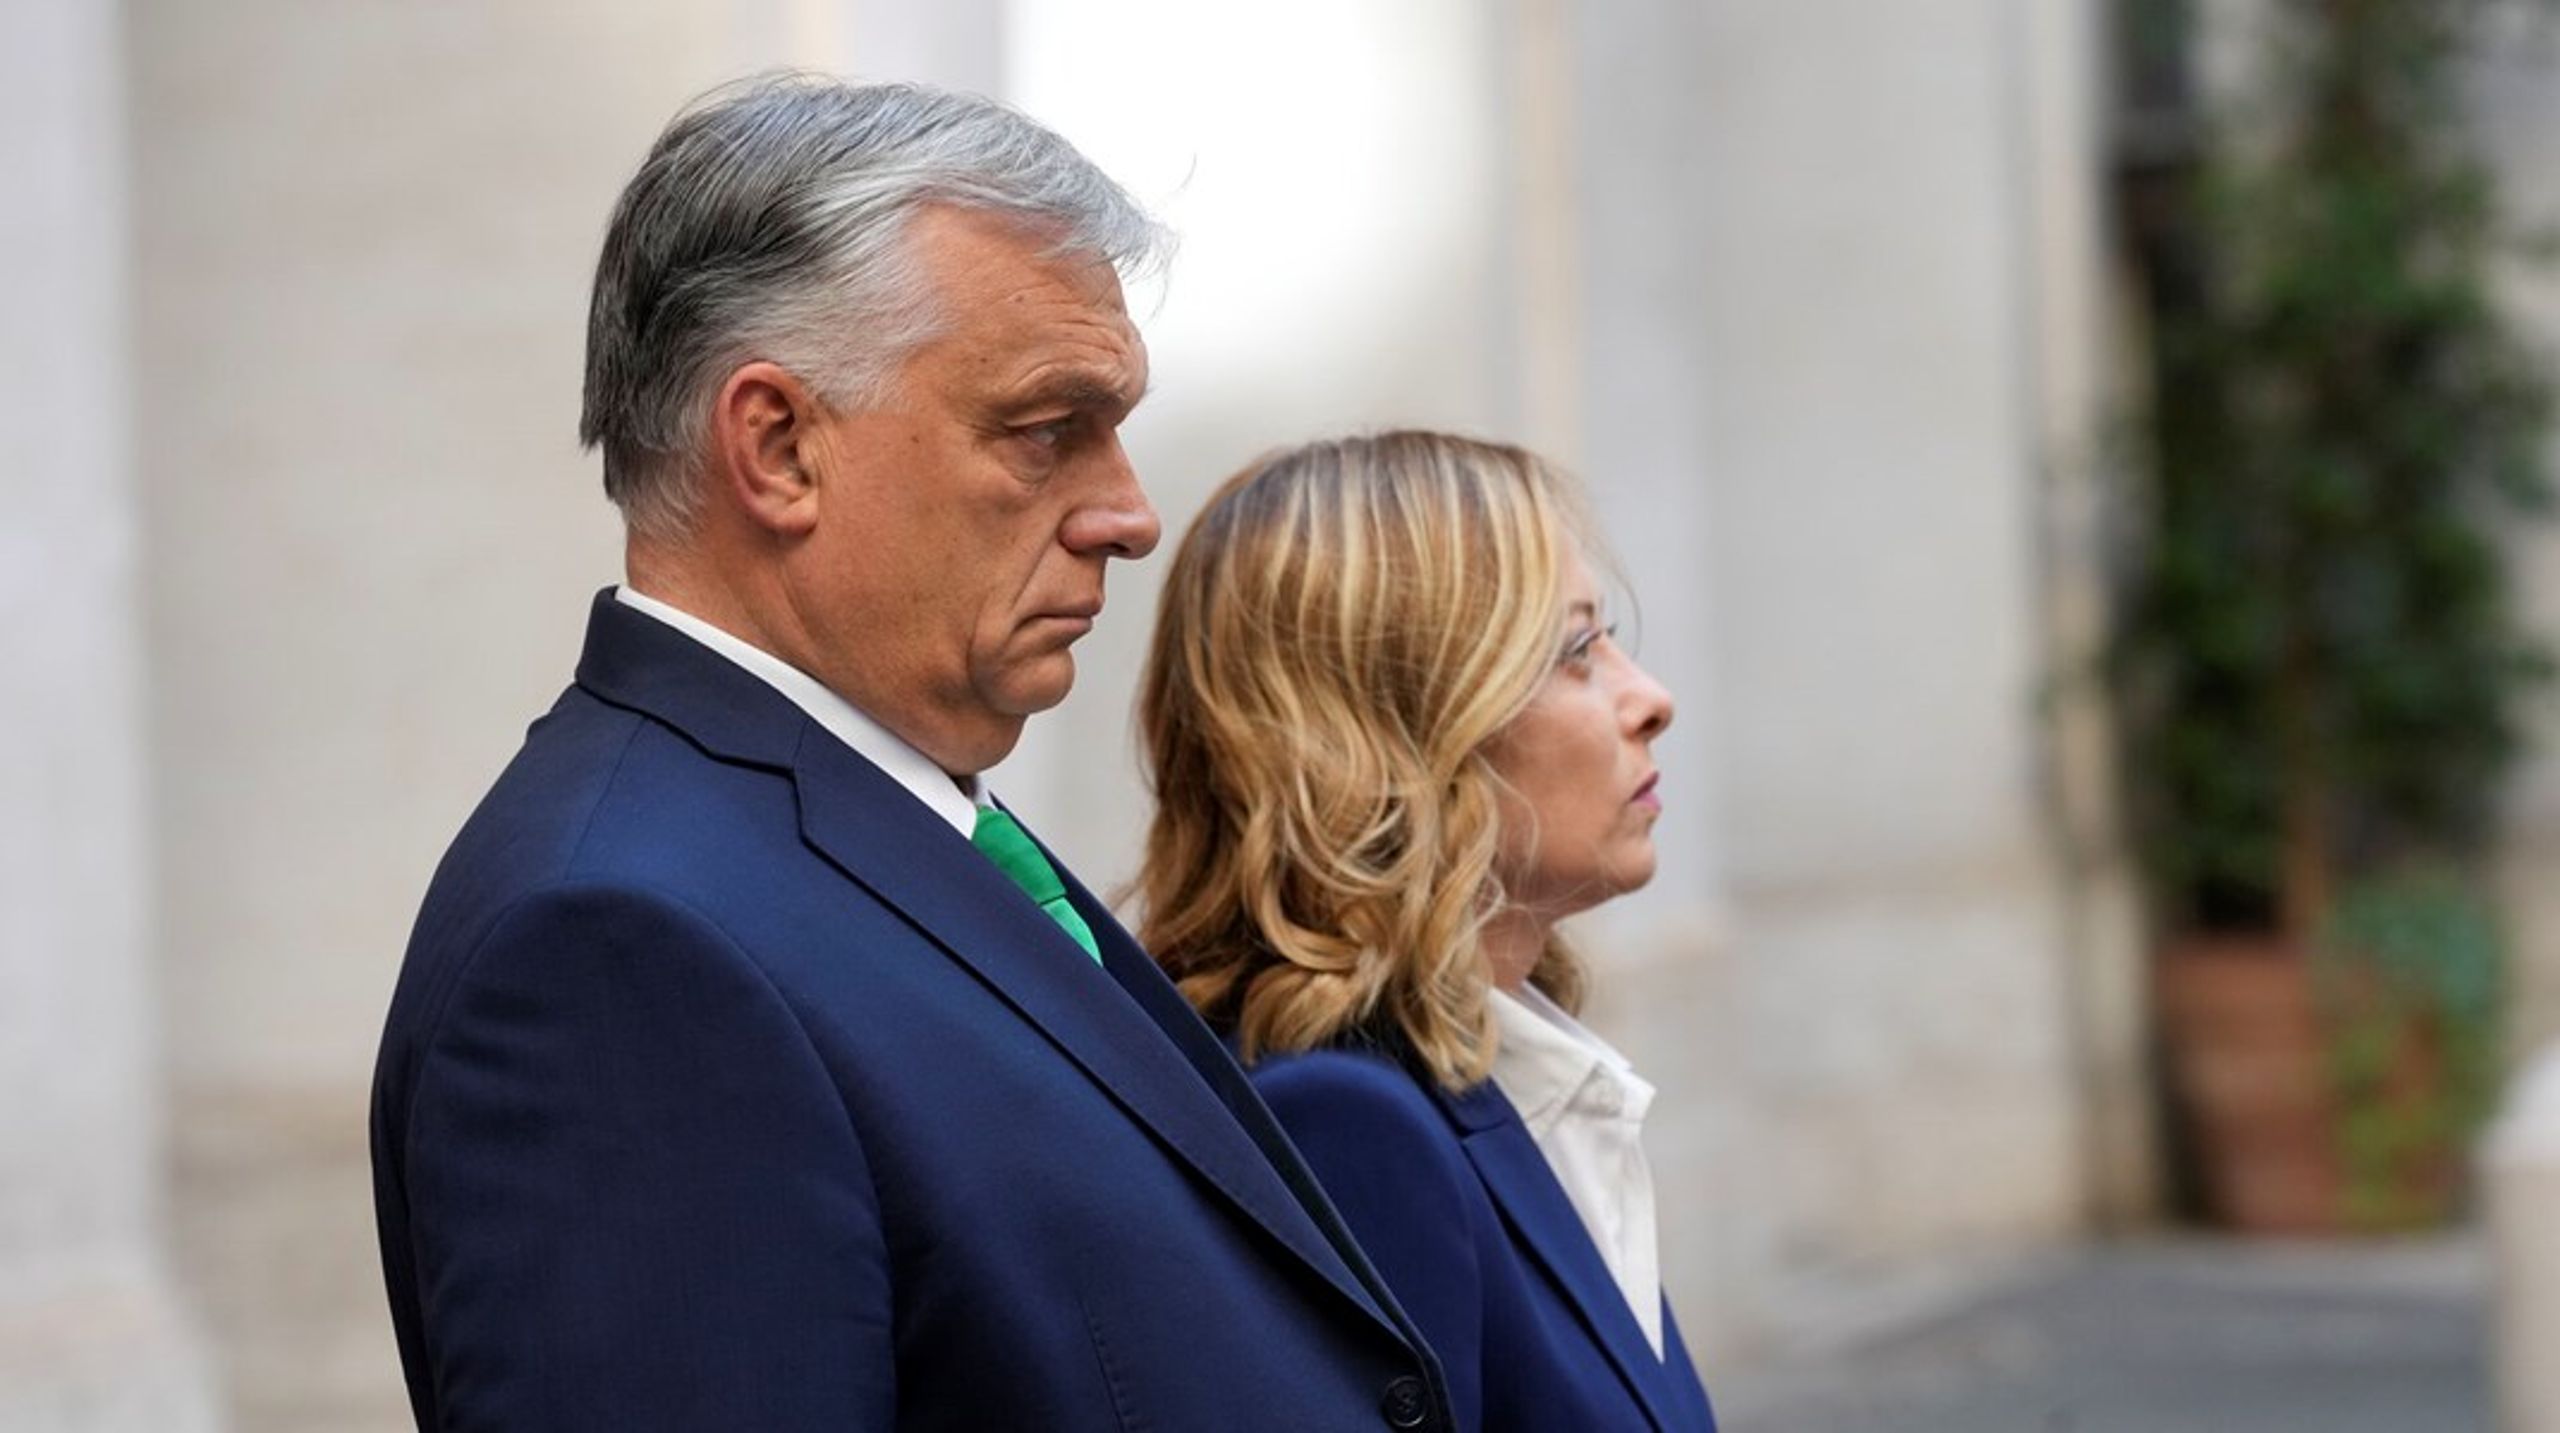 Som del af en rundrejse forud for sit EU-formandskab besøgte Viktor Orbán i sidste uge Italiens leder, Giorgia Meloni, der har meget til fælles med hans højrenationalistiske holdninger.